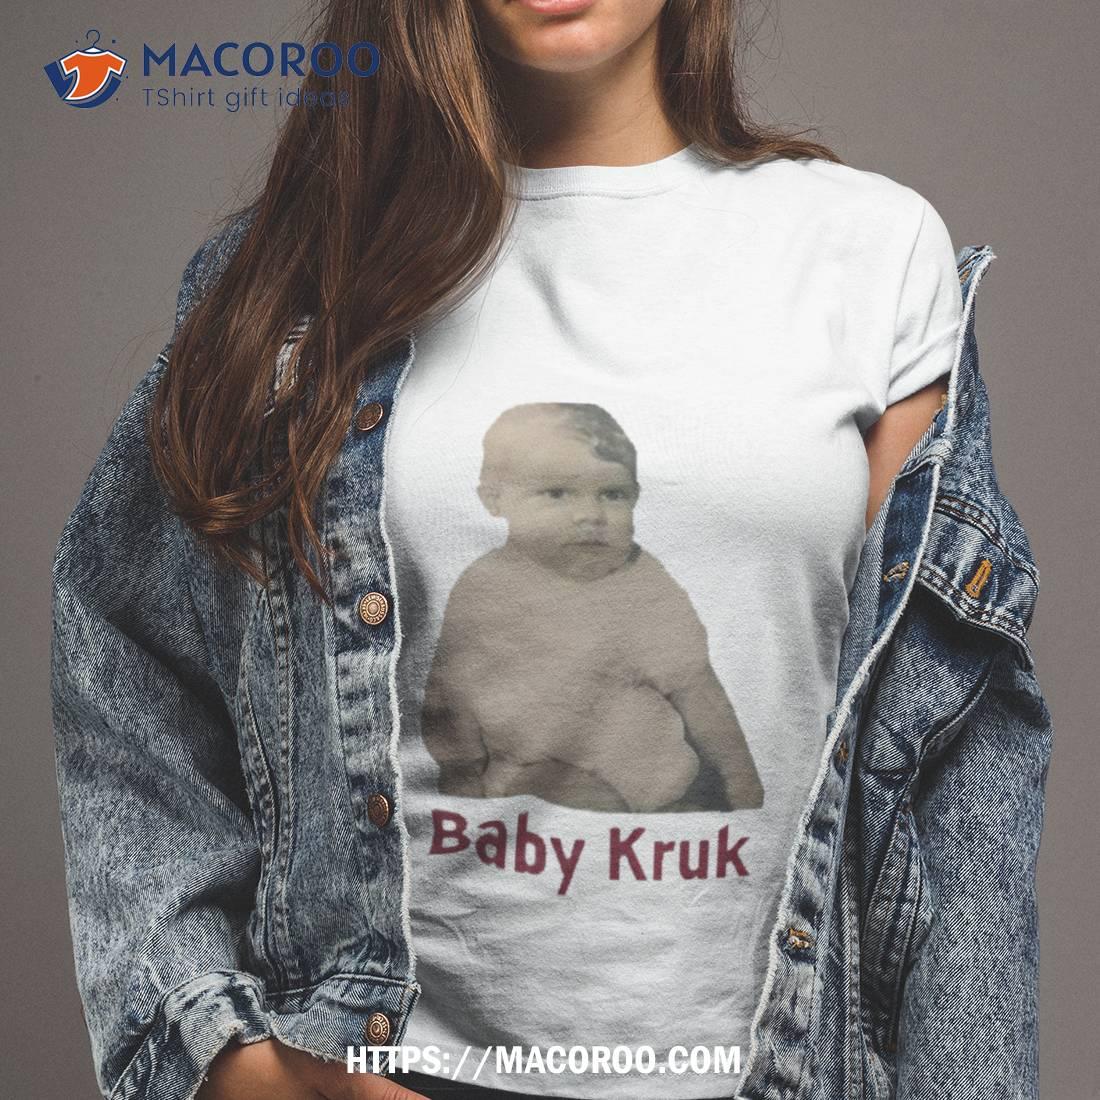 Baby Kruk Shirt Tshirt 2